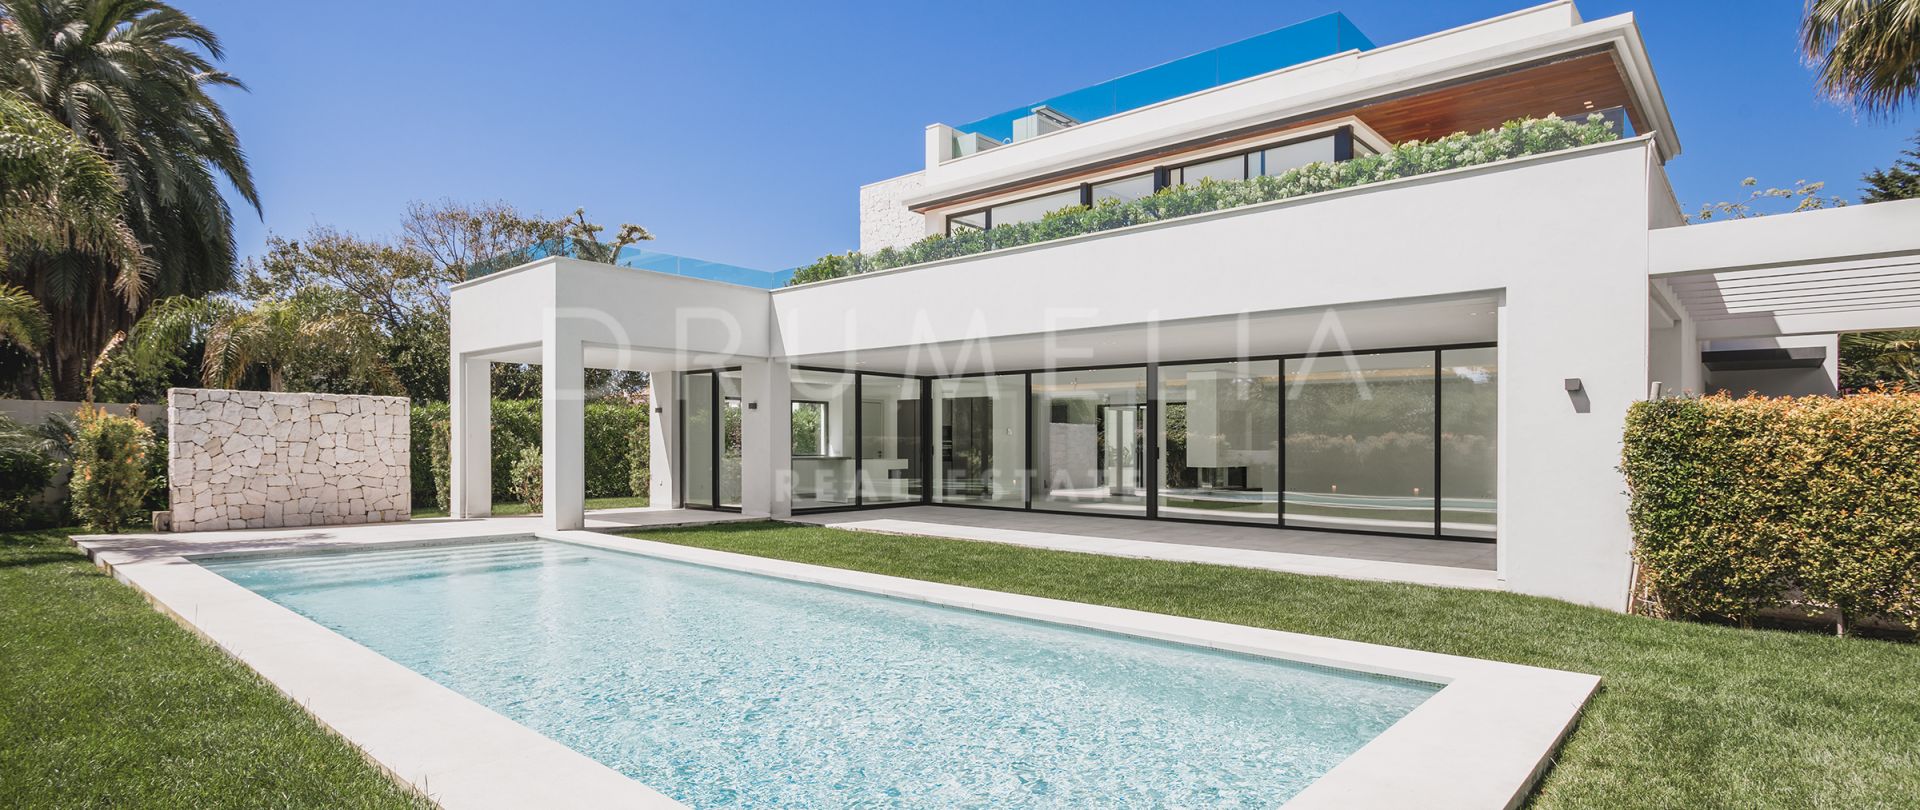 Nieuwe luxe villa in minimalistische stijl aan de kust van Casasola, Estepona